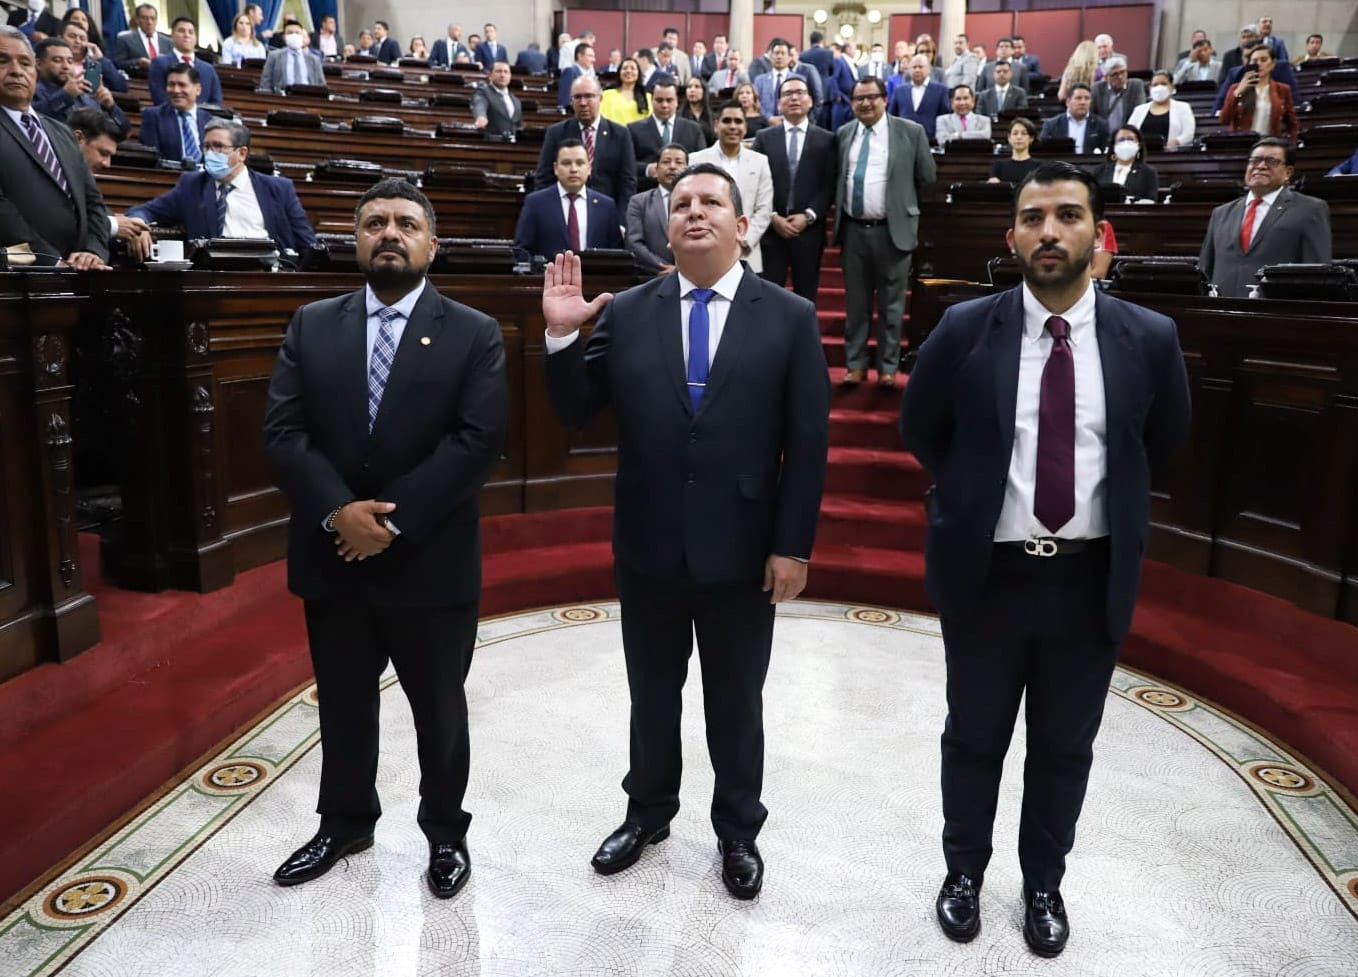 Frank Helmuth Bode Fuentes estuvo acompañado de los diputados Mynor Mejía y Napoleón Rojas al momento de prestar juramento a la Constitución. Fotografía: Congreso.